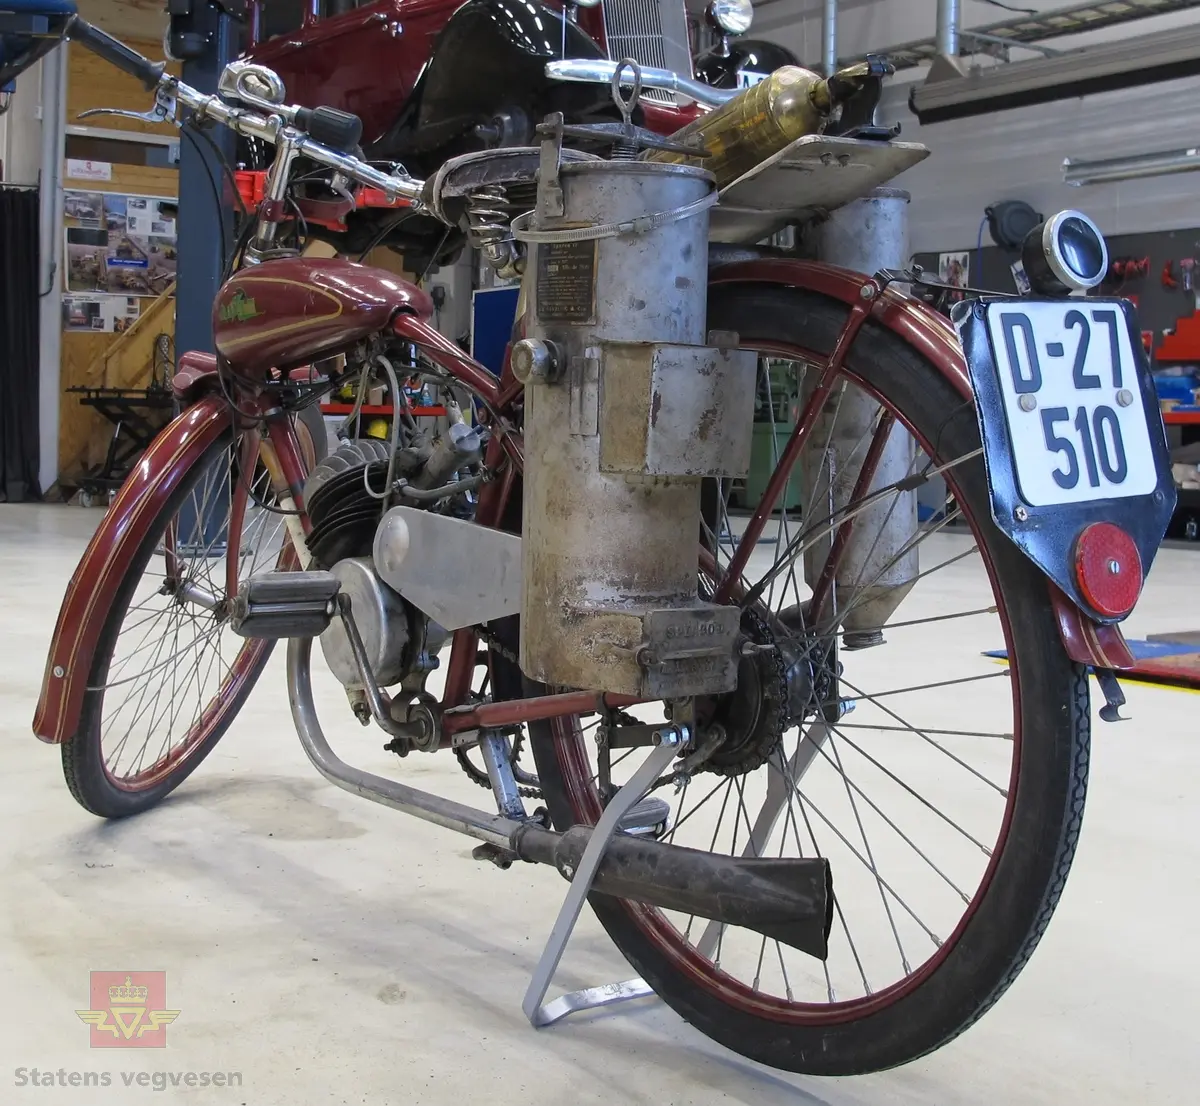 Blixt 98 cm3. Rød (vinrød), motorsykkel med pedaler, forbrenningsmotor og vedgassgenerator. 
Motorsykkelen er en BLIXT lettvekts motorsykkel fra 1936 med en 98 cc, en-sylindret totaktsmotor av fabrikat Fichtel & Sachs som yter 2,5 hk og går på bensin.
Generatoren er av fabrikat Åsbrink, type Sperco lI, og laget primært for bruk med trekull. Virkningsgraden er ca 0,4 med "godt køl", det vil si en 2,5 hk motor kan under gunstige omstendigheter teoretisk utvikle ca 1 hk. Kullet skal knuses til biter av størrelse 5-15 millimeter, og oppfyringen er svært omstendelig. I teorien skal man kunne kjøre ca 10 km på "en fyring".
Motorsykkelen har 2 gir og veier 73 kilo.
Den er 72 cm bred, 210 cm lang, og ...høy...
På hele sykkelen er det 1 sitteplass.
Det er montert pumpe til dekkene på ramma og et brannslukkingsapparat bak på sykkelen.